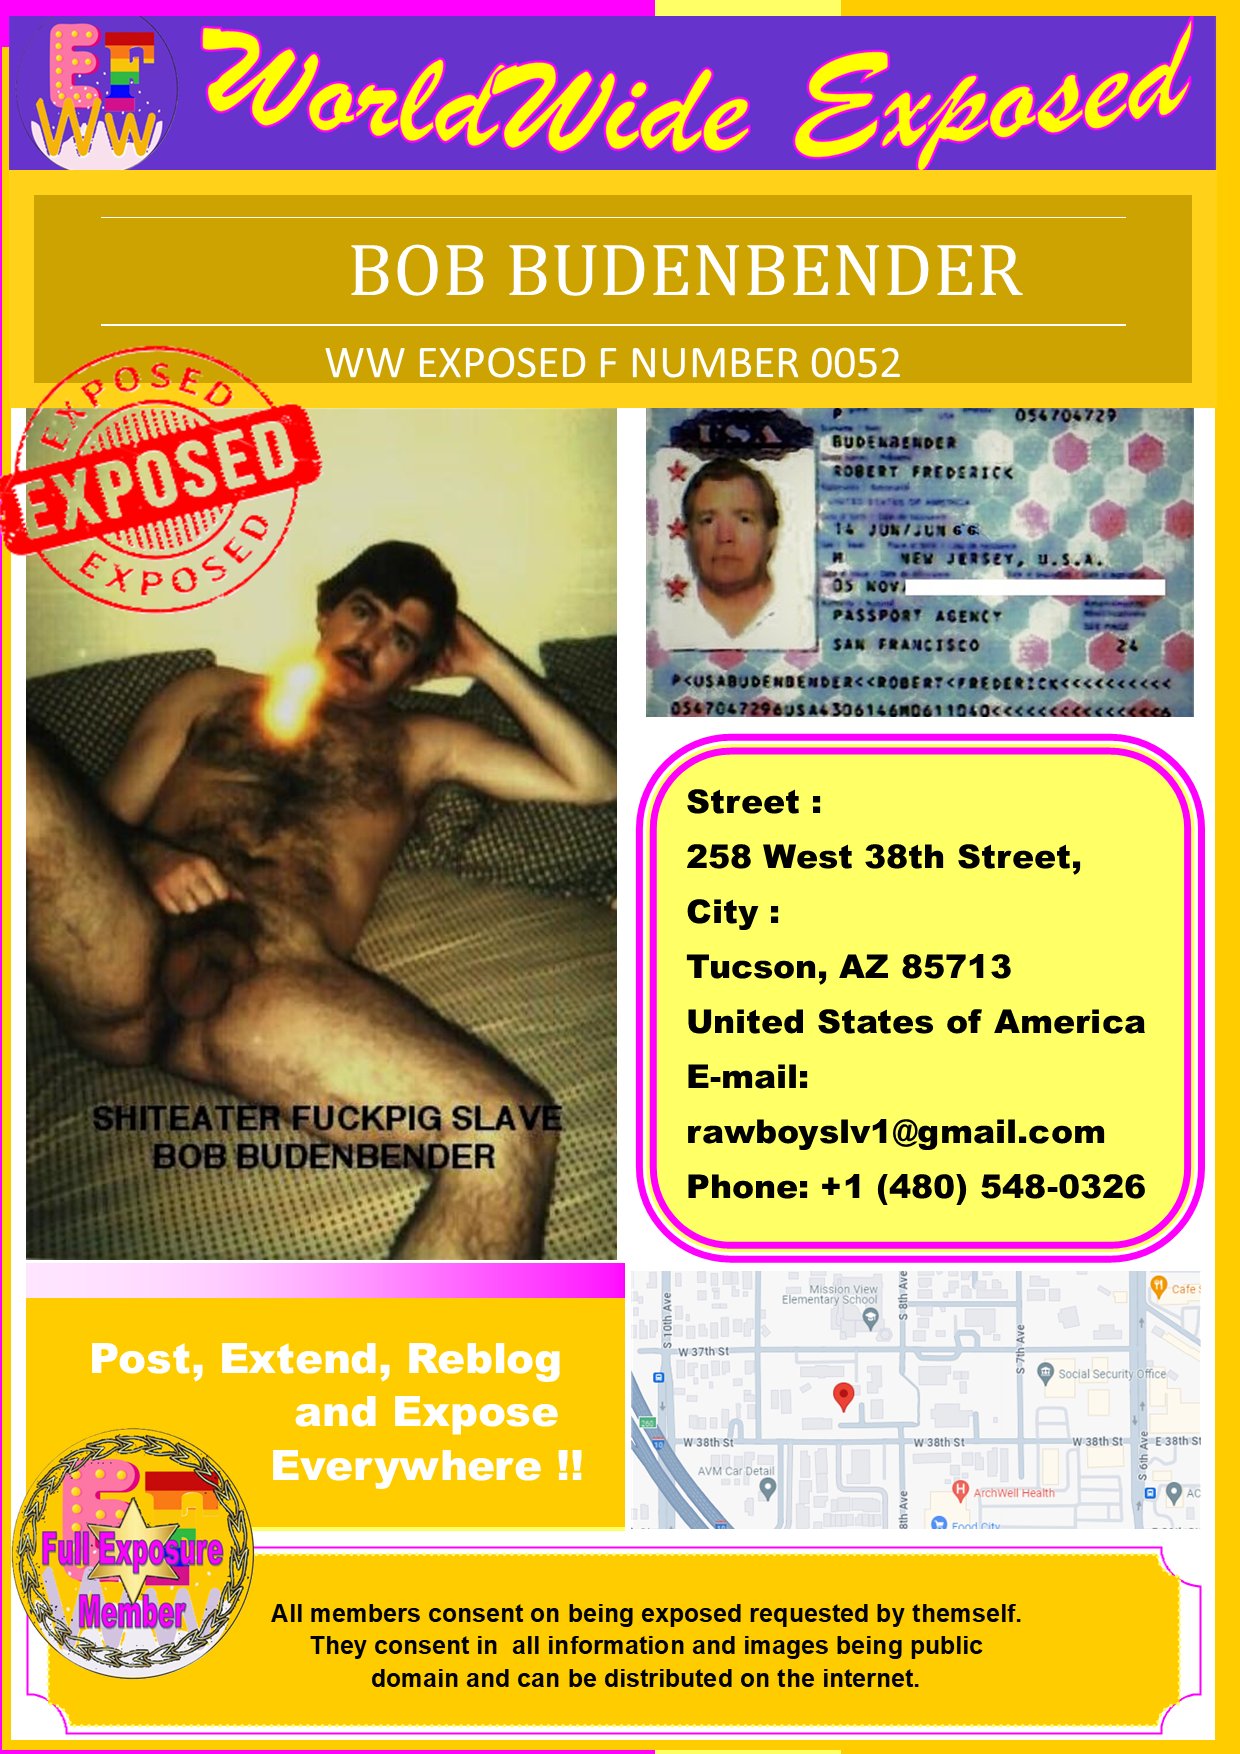 Bob Budenbender Exposed Faggot